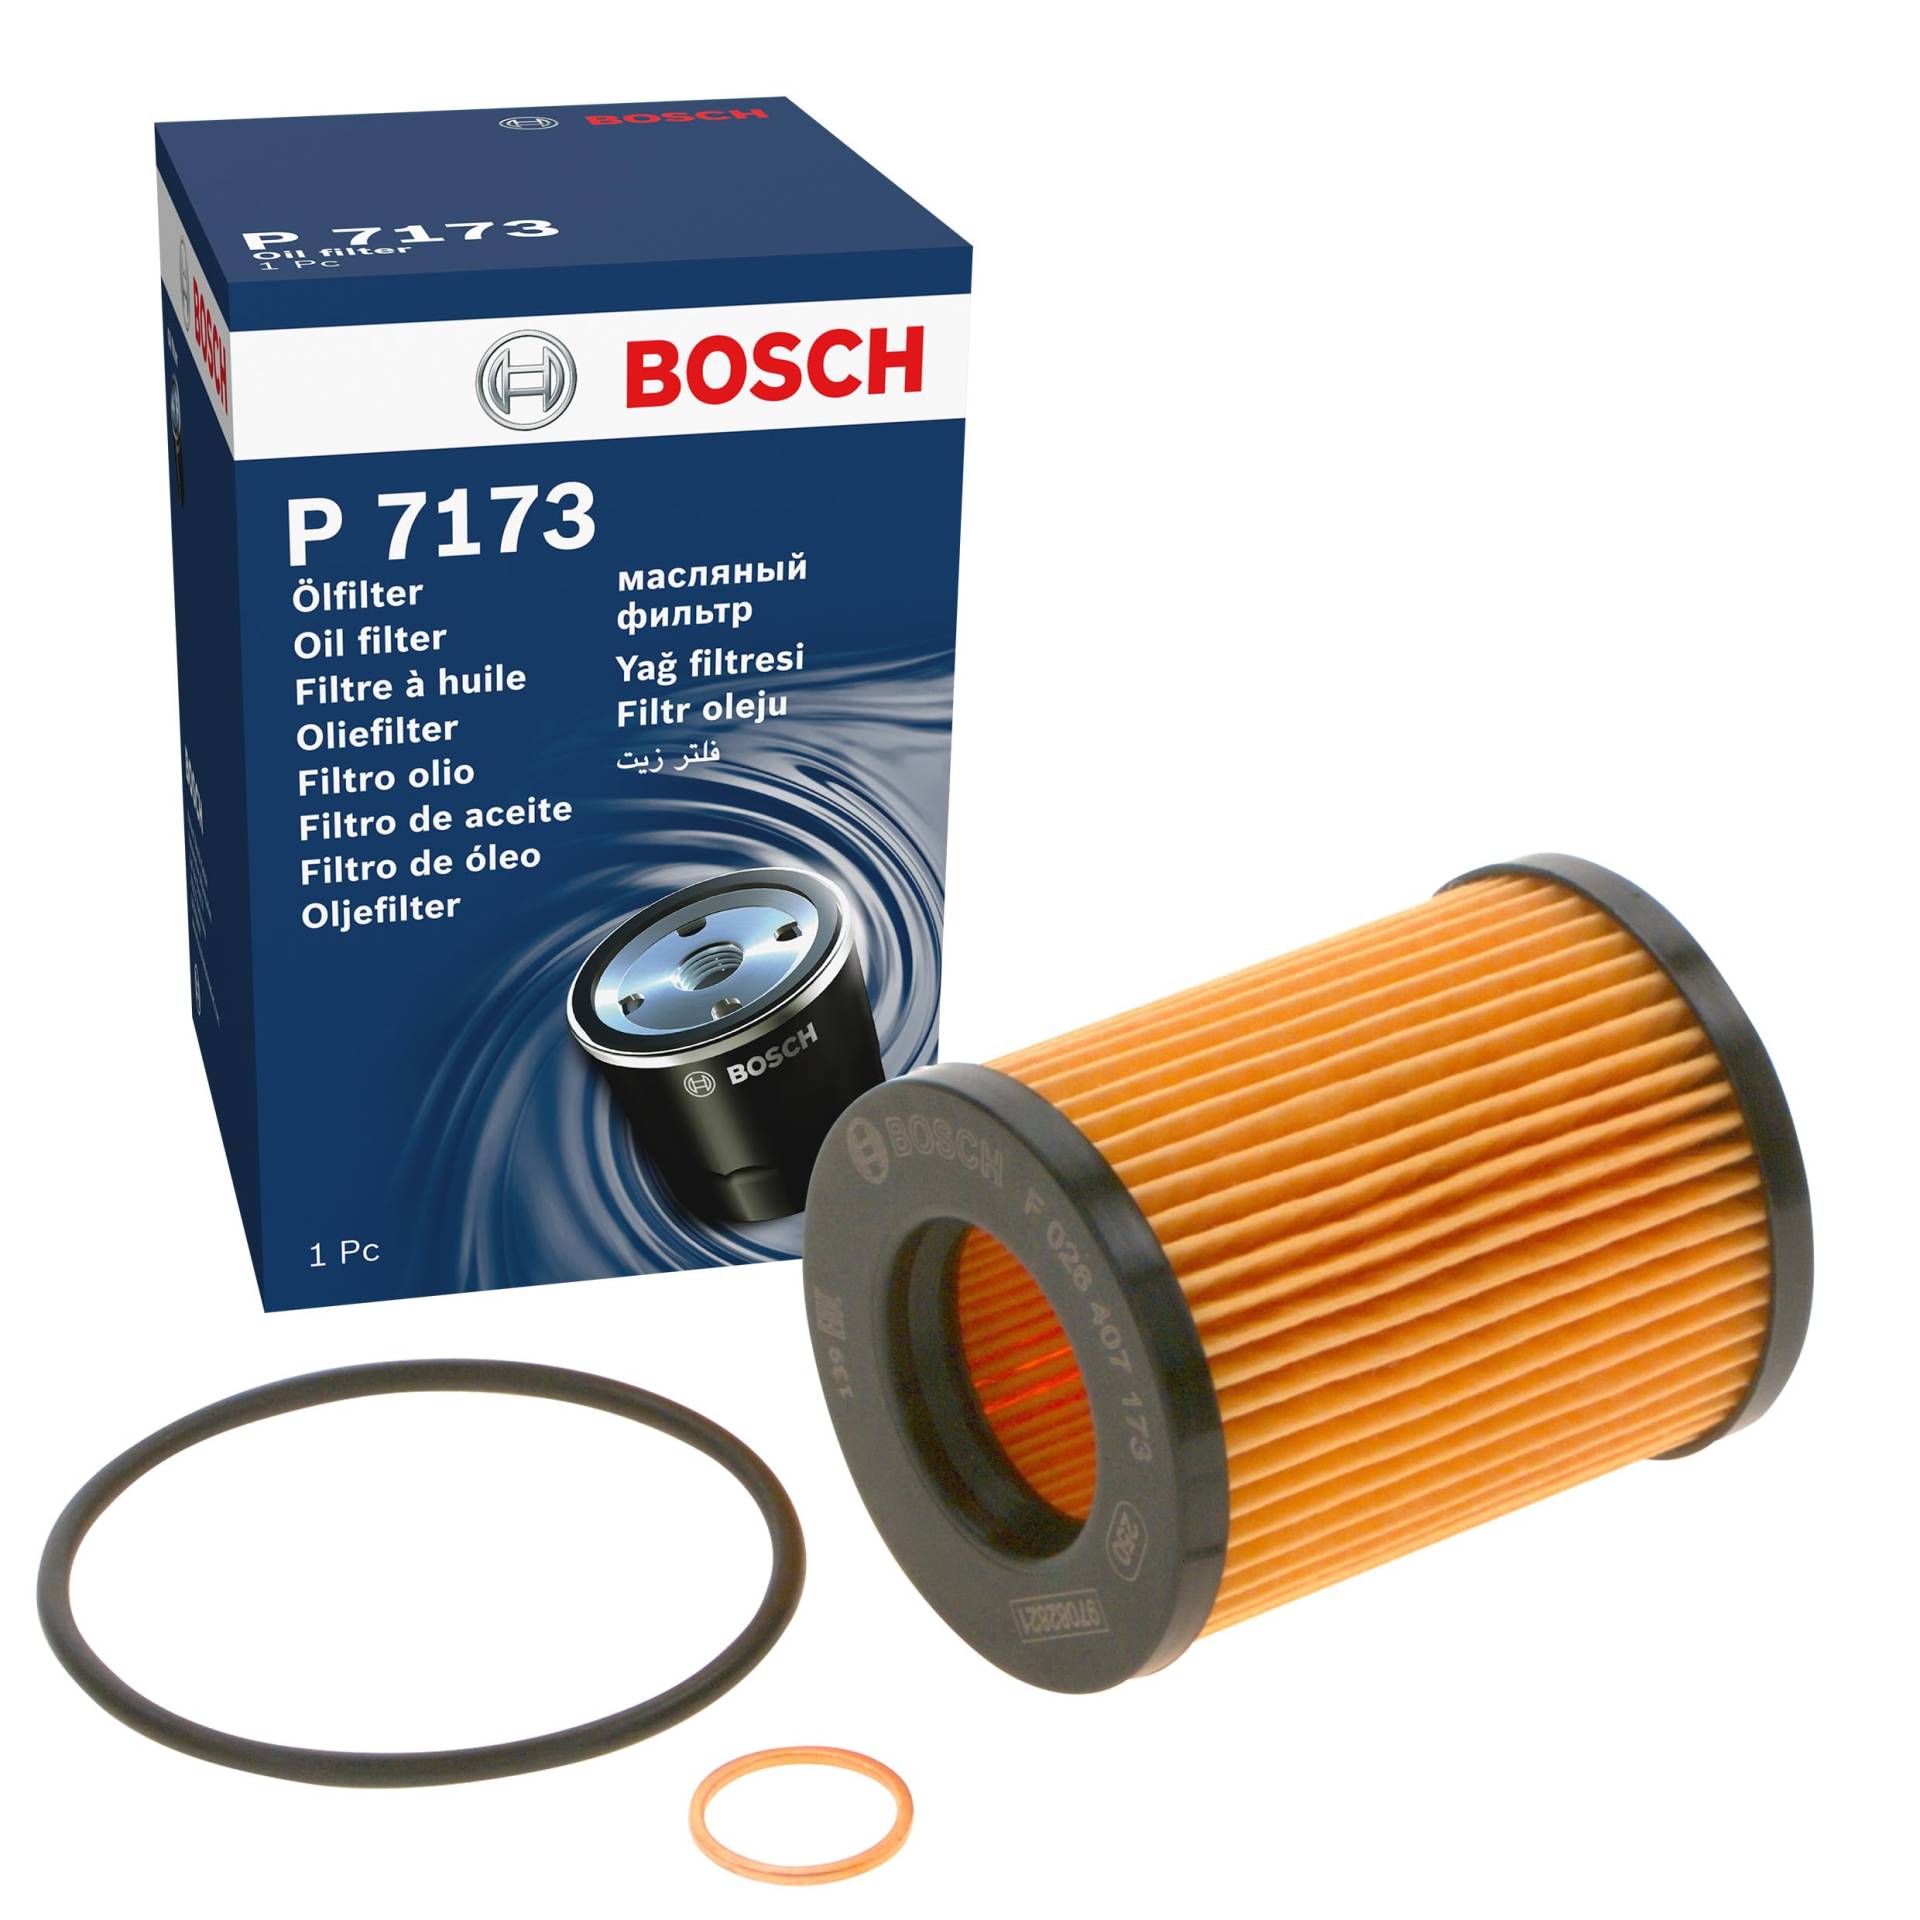 Bosch P7173 - Ölfilter Auto von Bosch Automotive